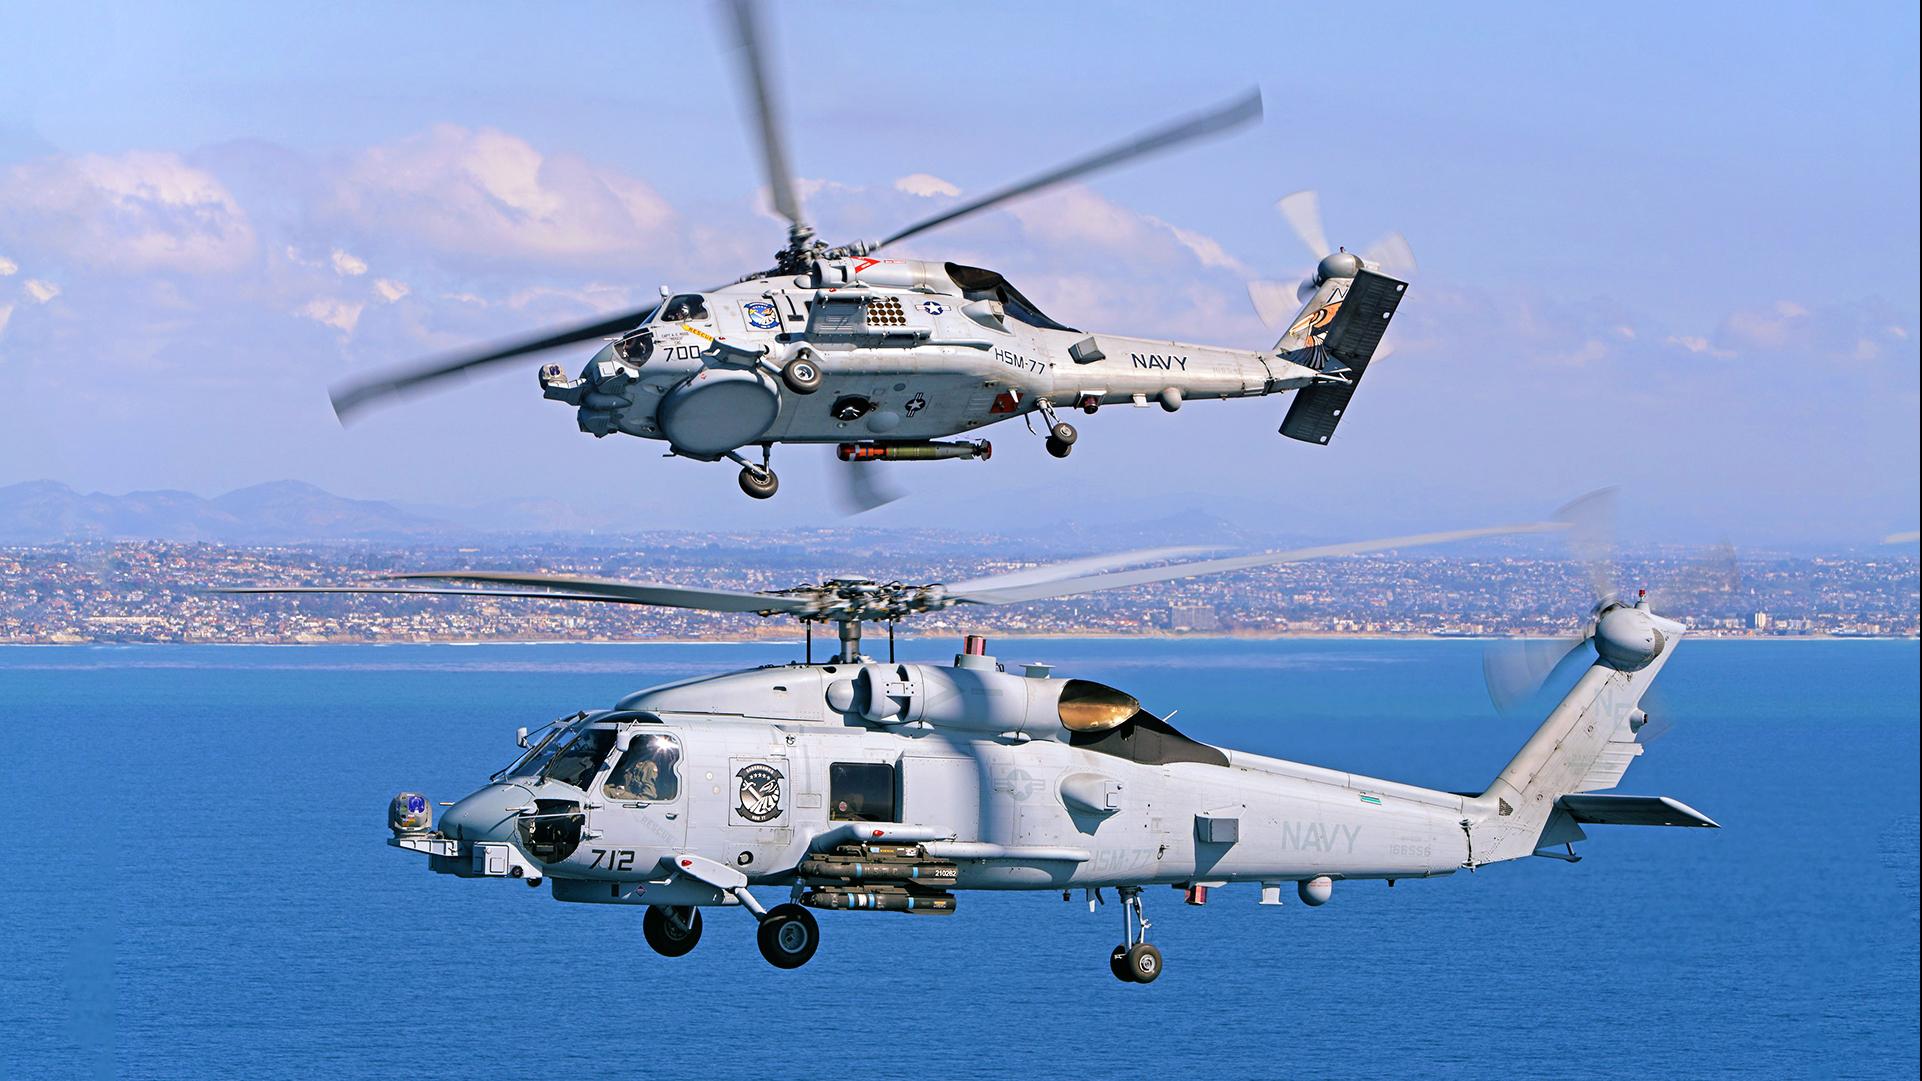 MH-60R USN and RAN Mateship